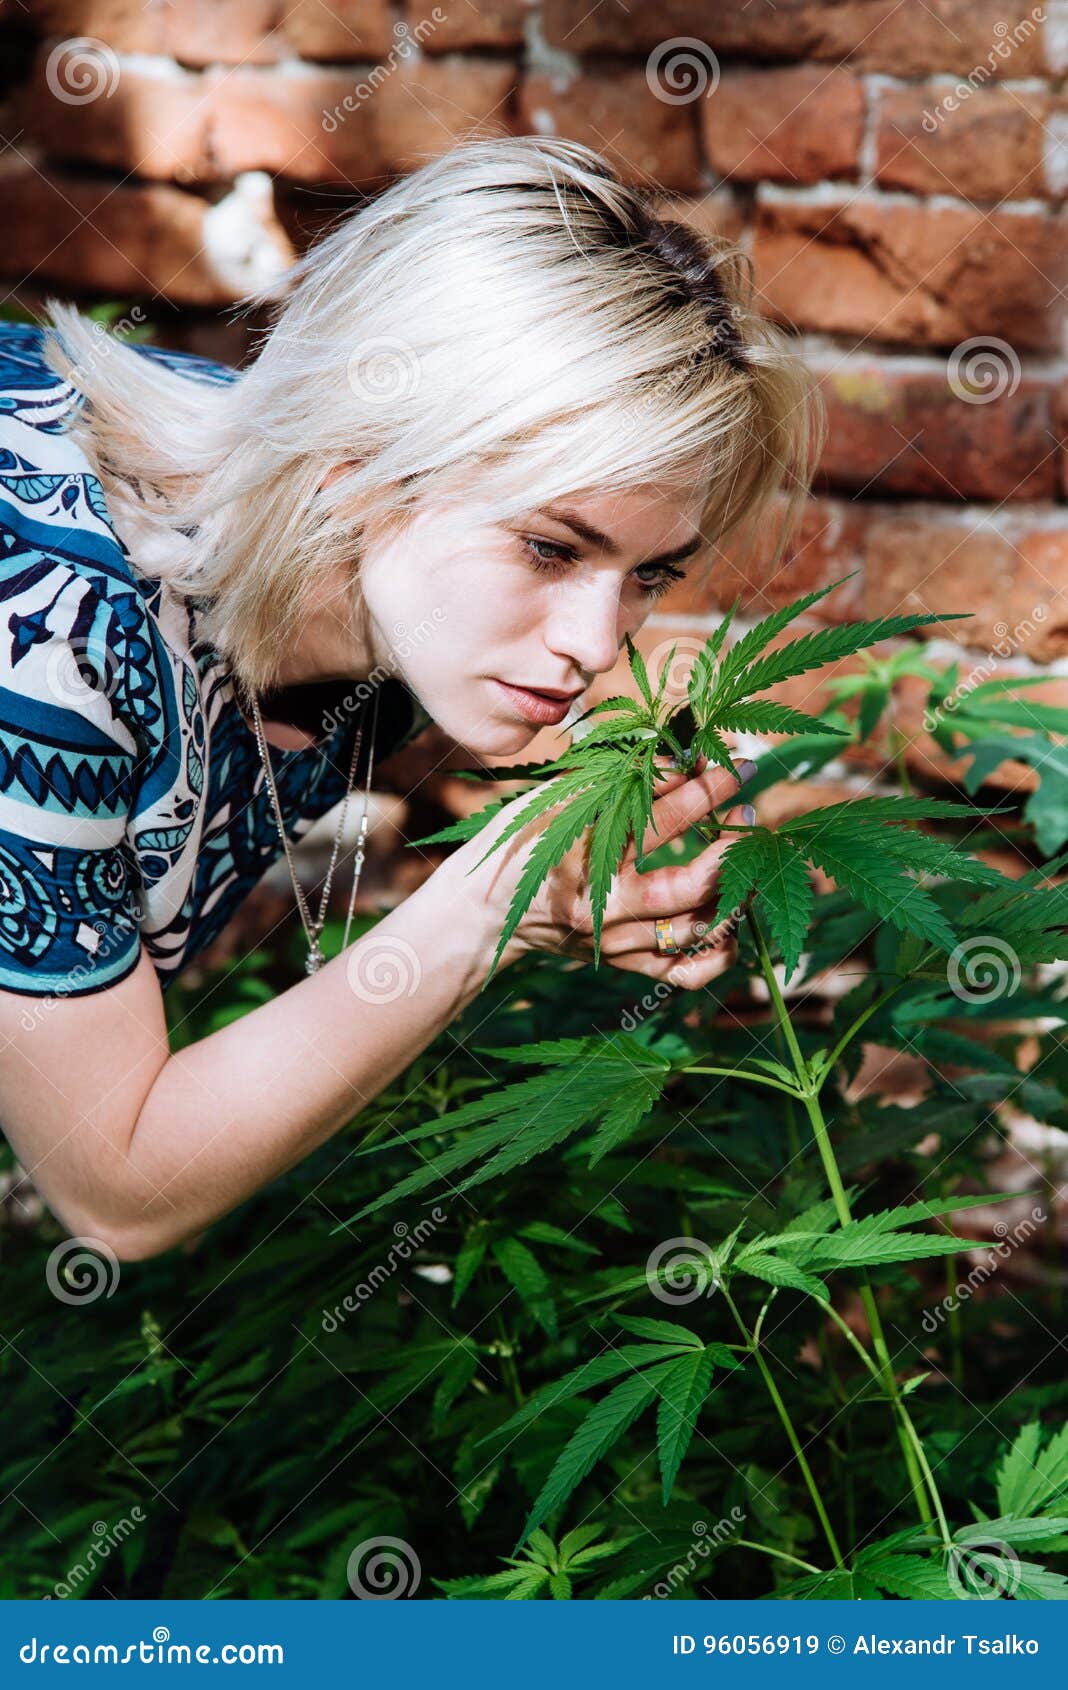 Фото девушка и конопля народная лечение от марихуаны